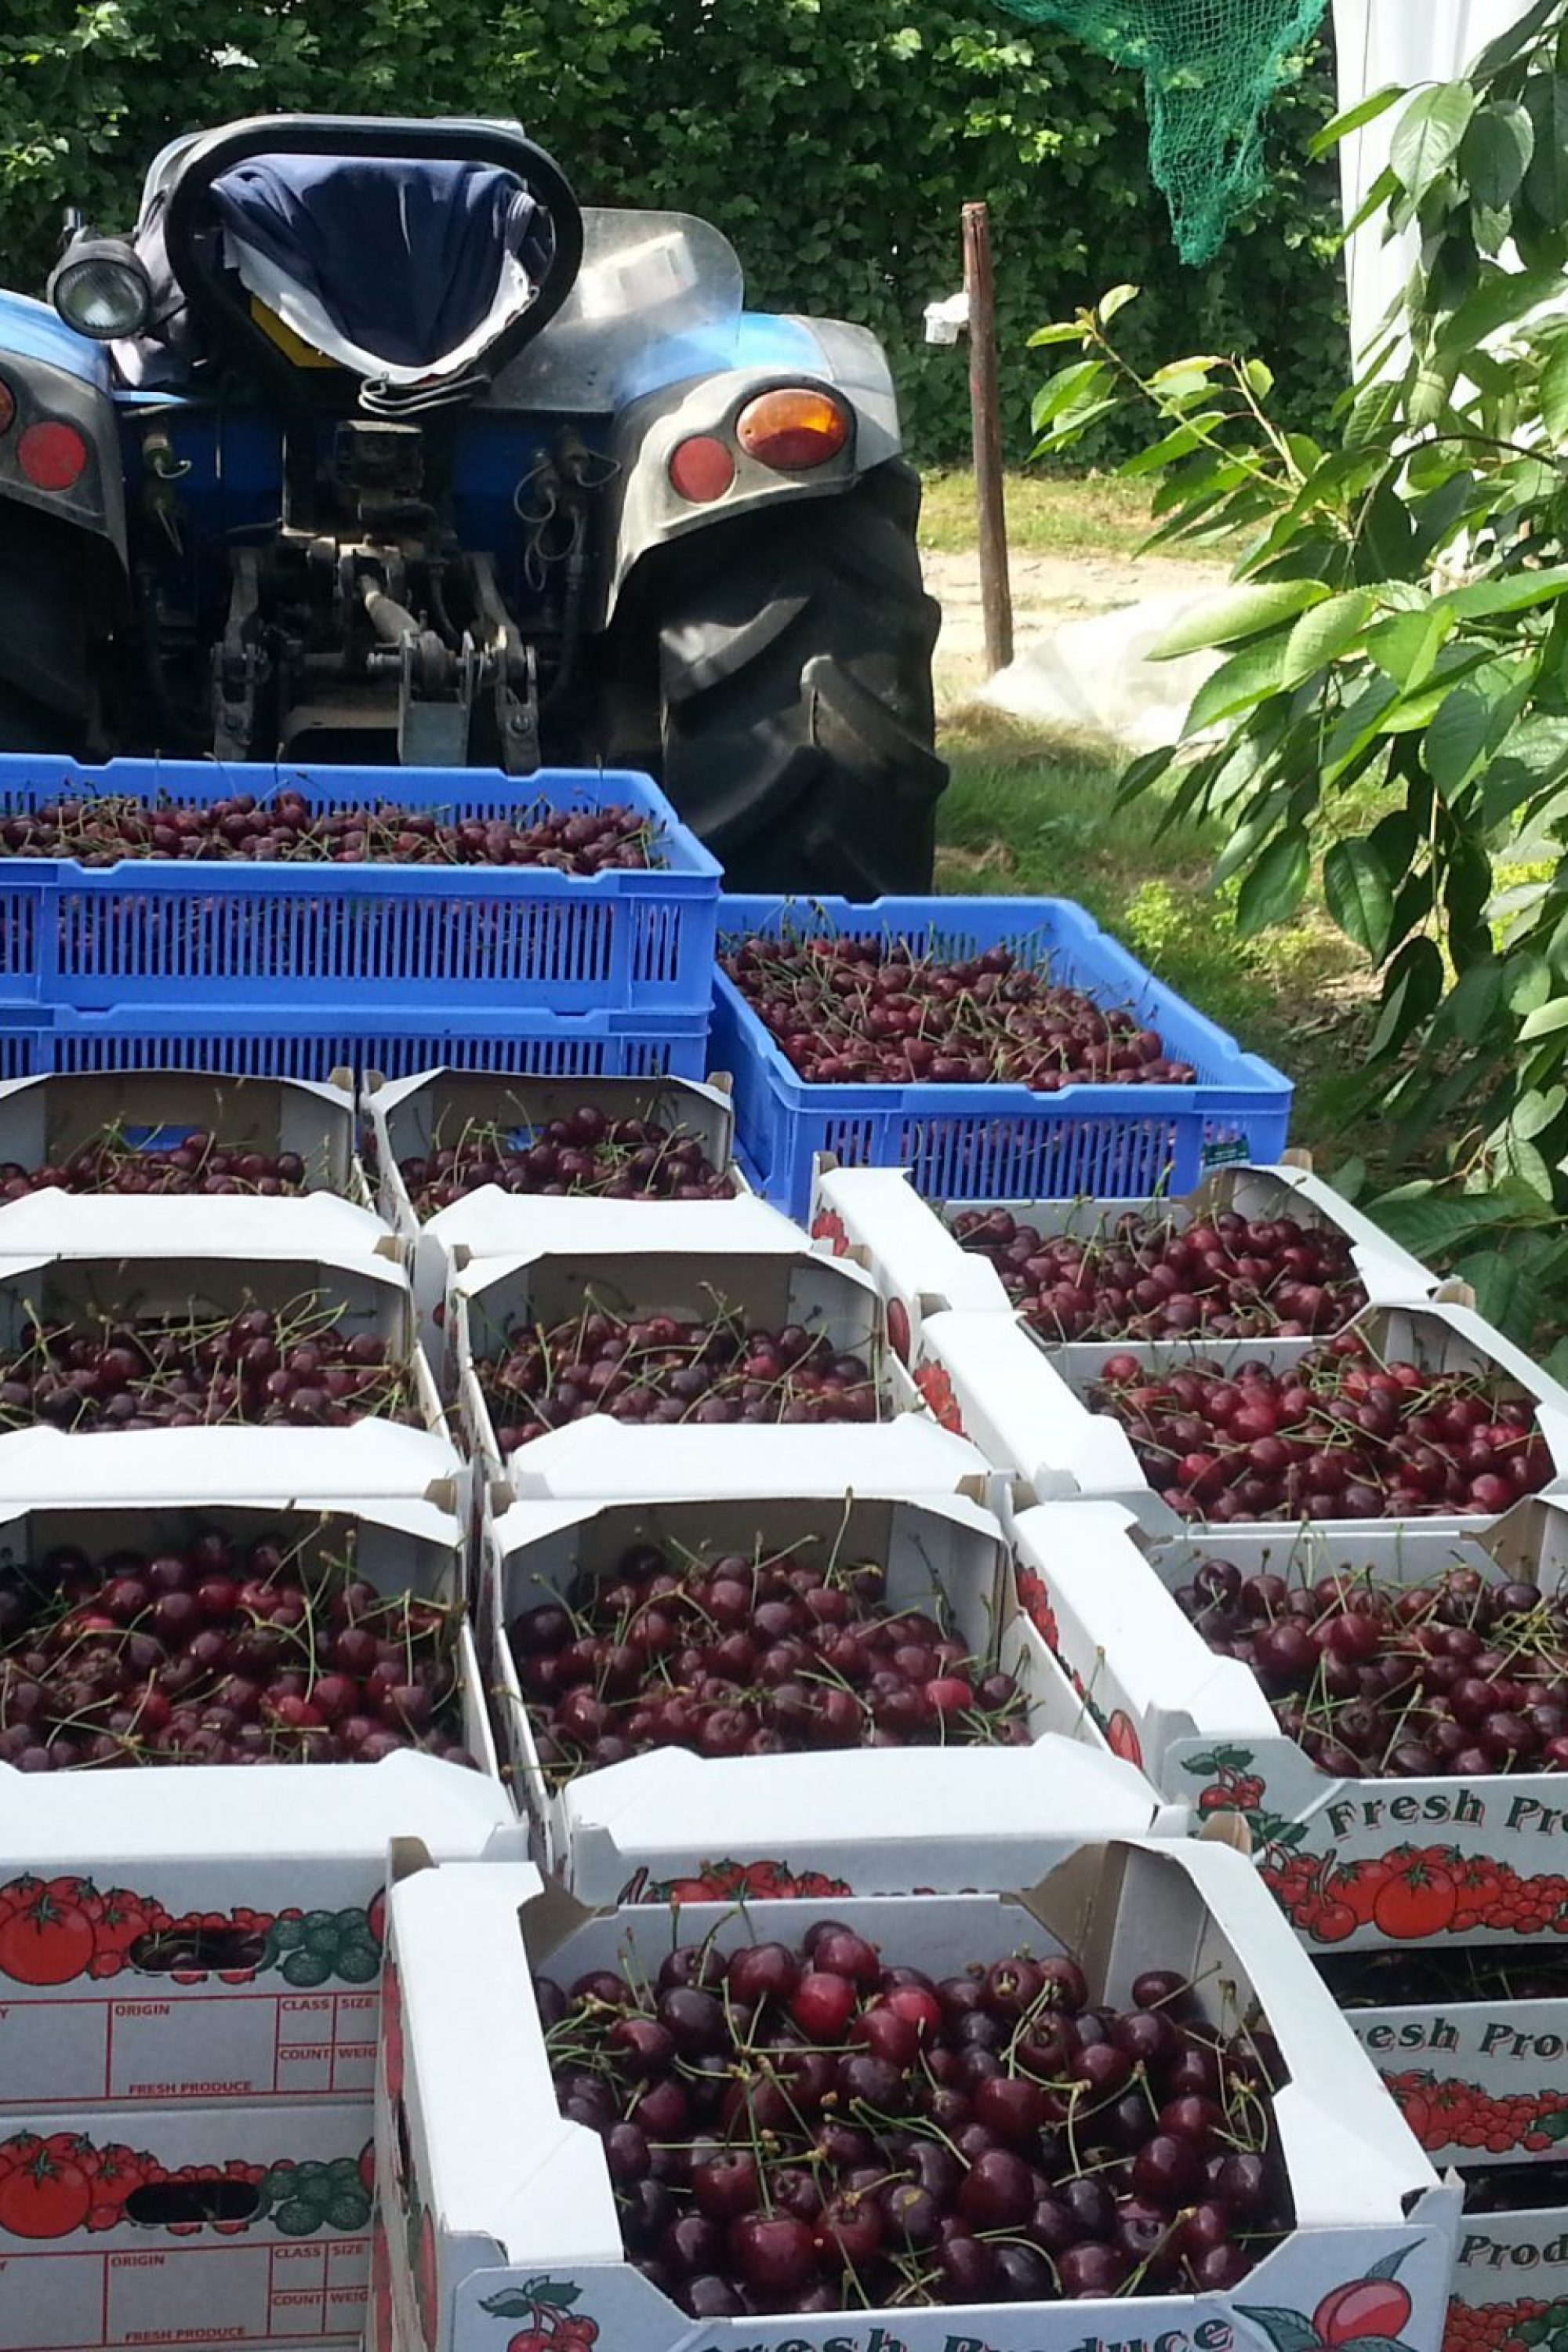 Cherries picking